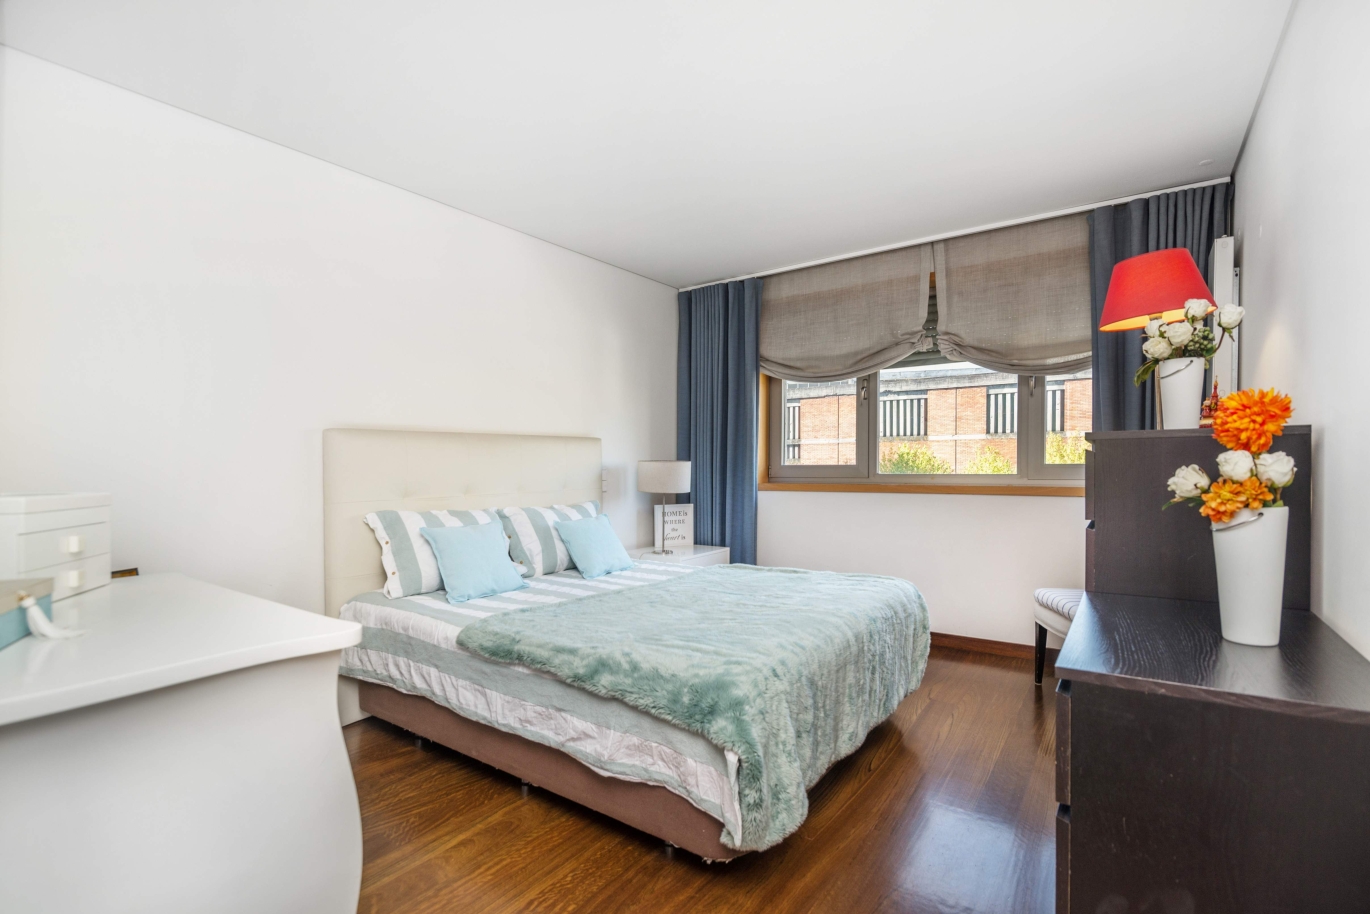 Venta apartamento en condominio privado con vistas río, Porto,Portugal_121038